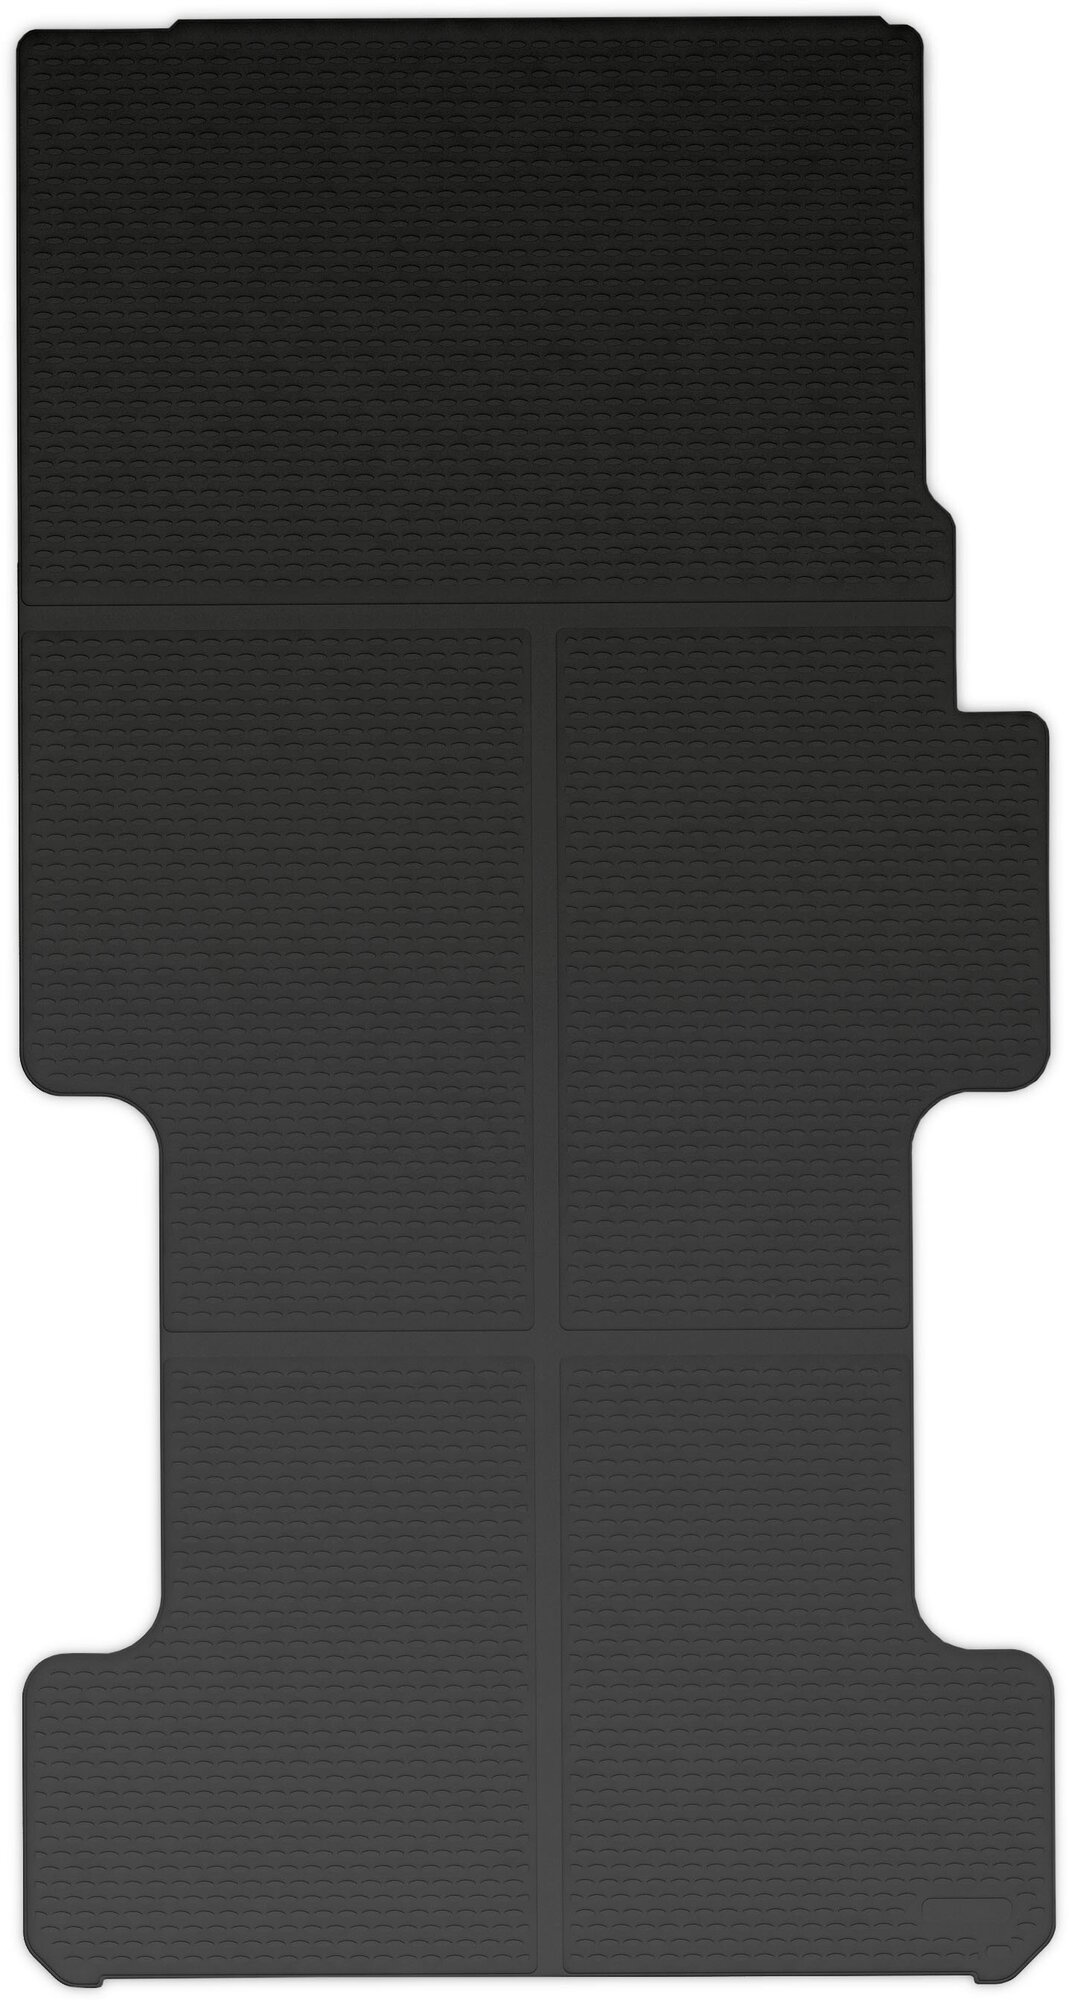 Коврик багажника Element MERCEDES-BENZ Sprinter Classic 01/2013 фургон длинная база односкатная компоновка полиуретановый черный 1 шт - фото №5